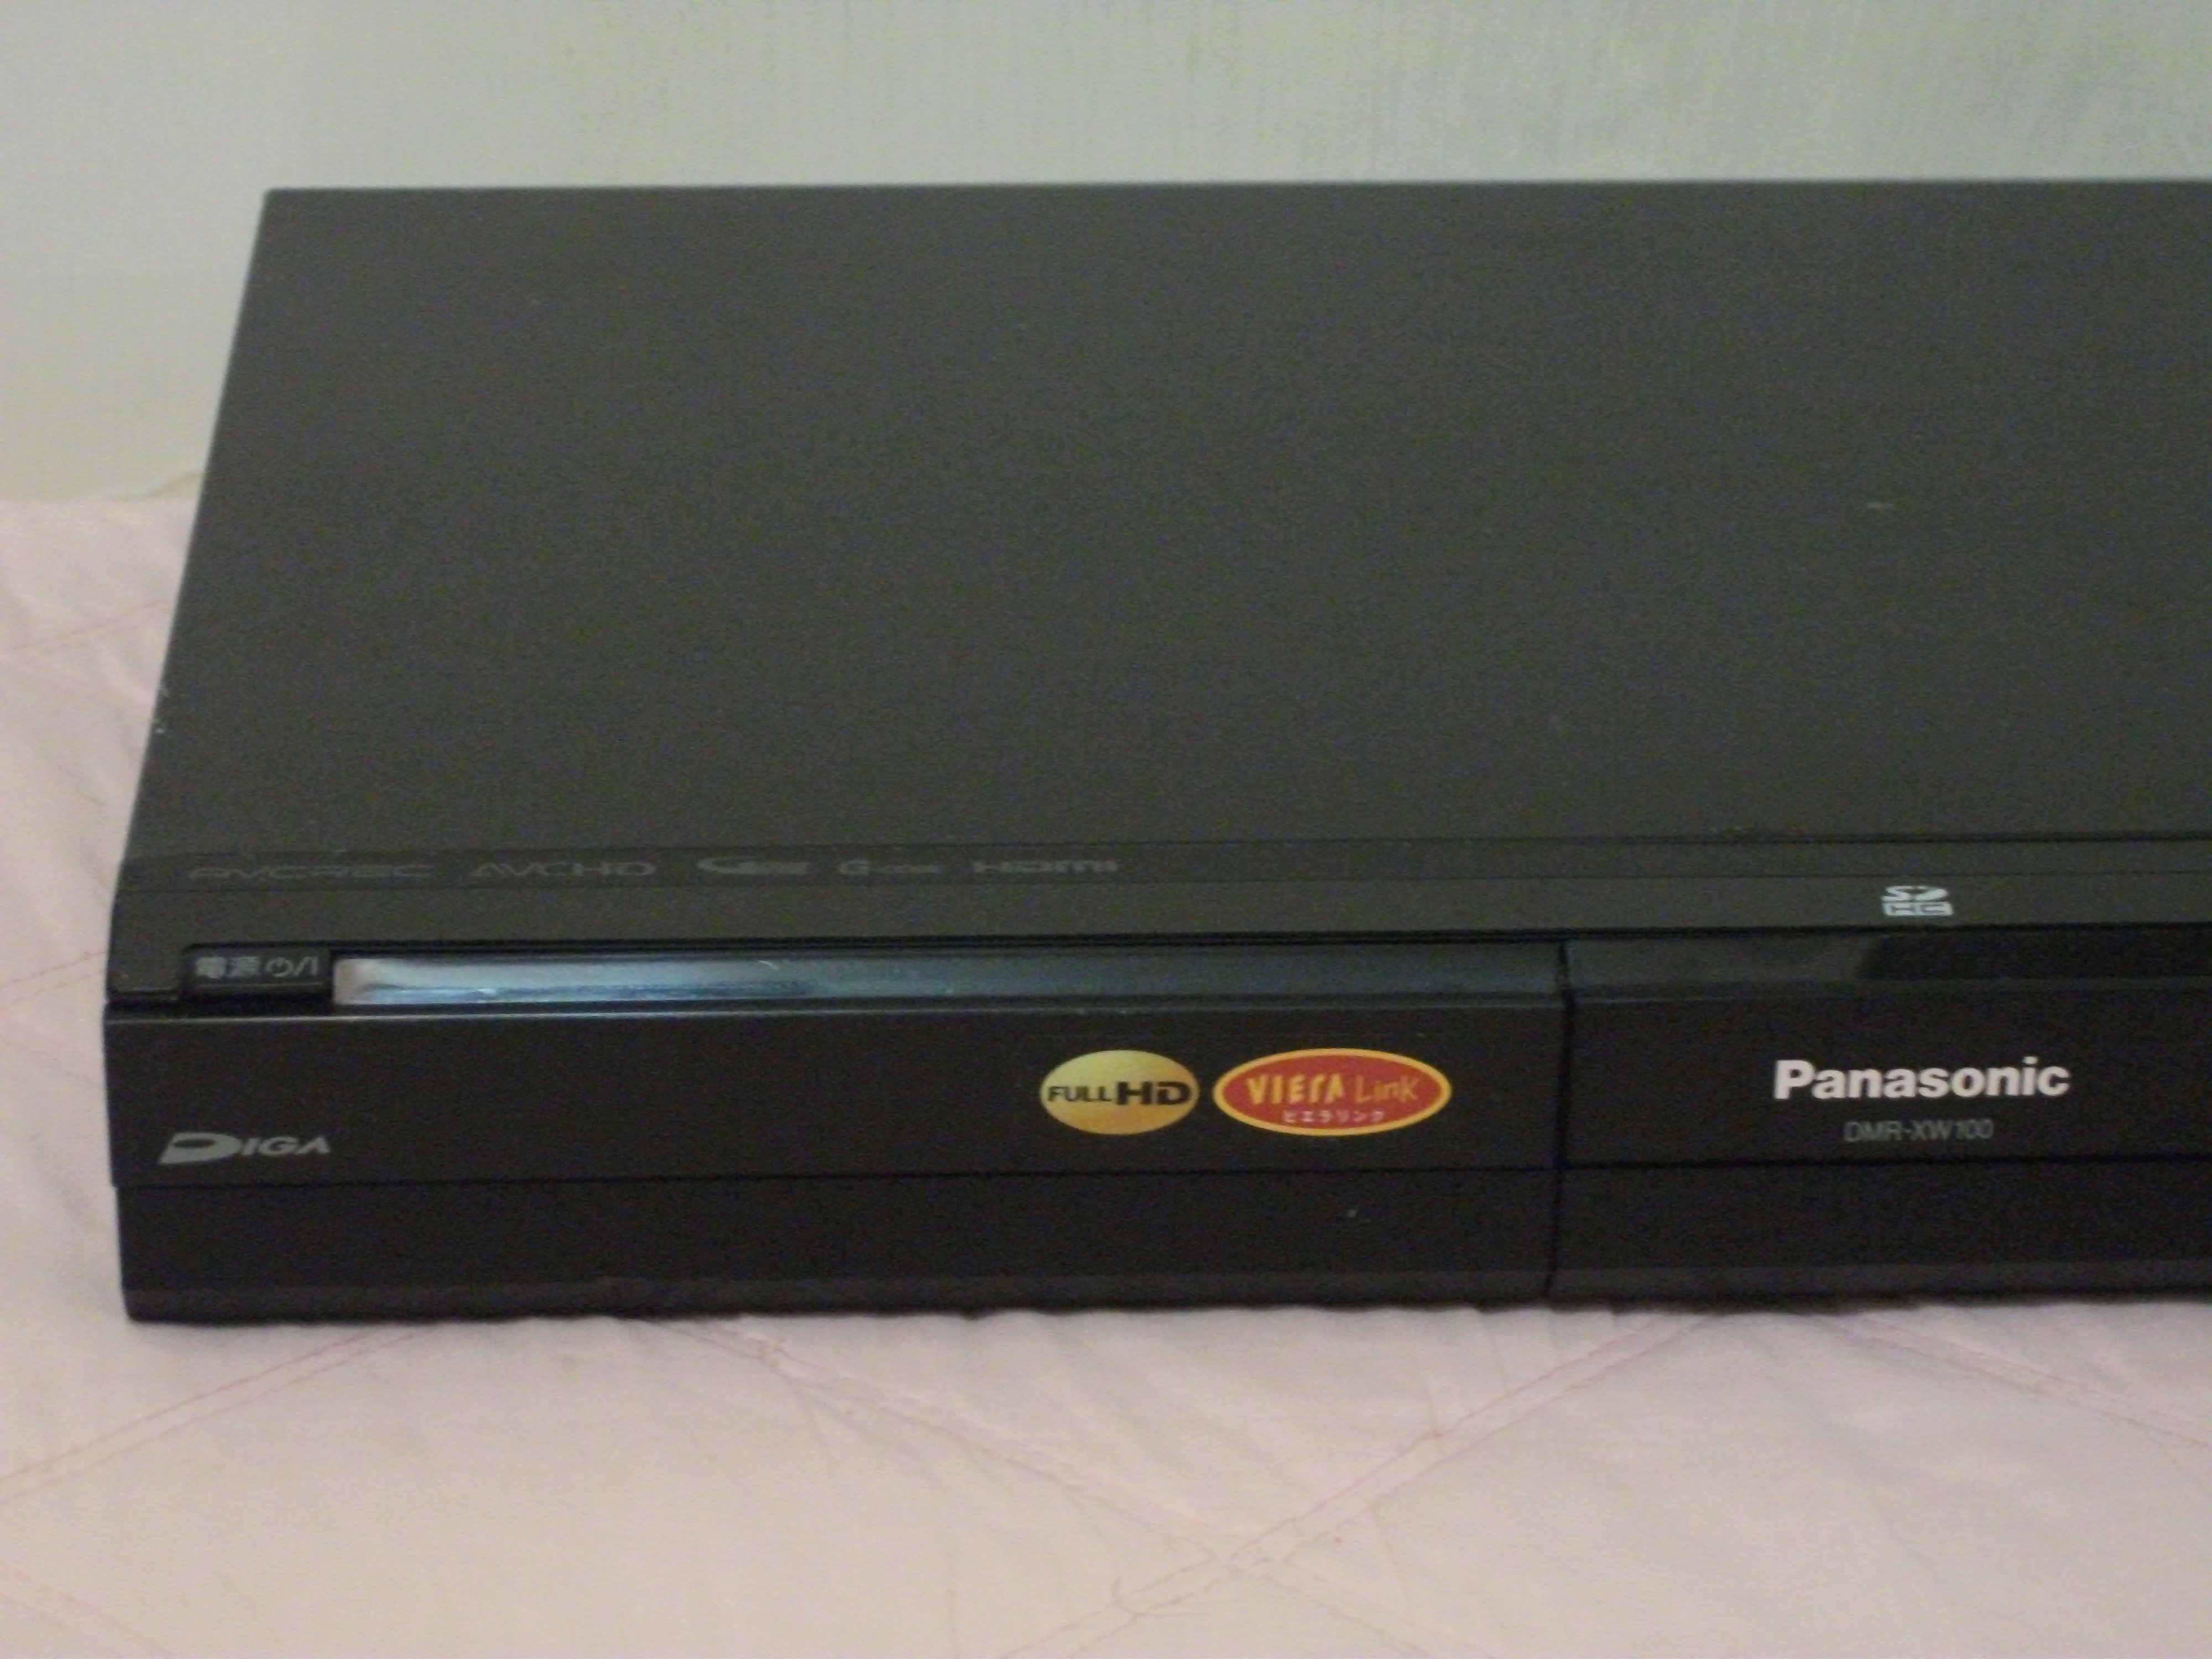 熱販売 Panasonic ハイビジョン DIGA DMR-XW100 DVDレコーダー